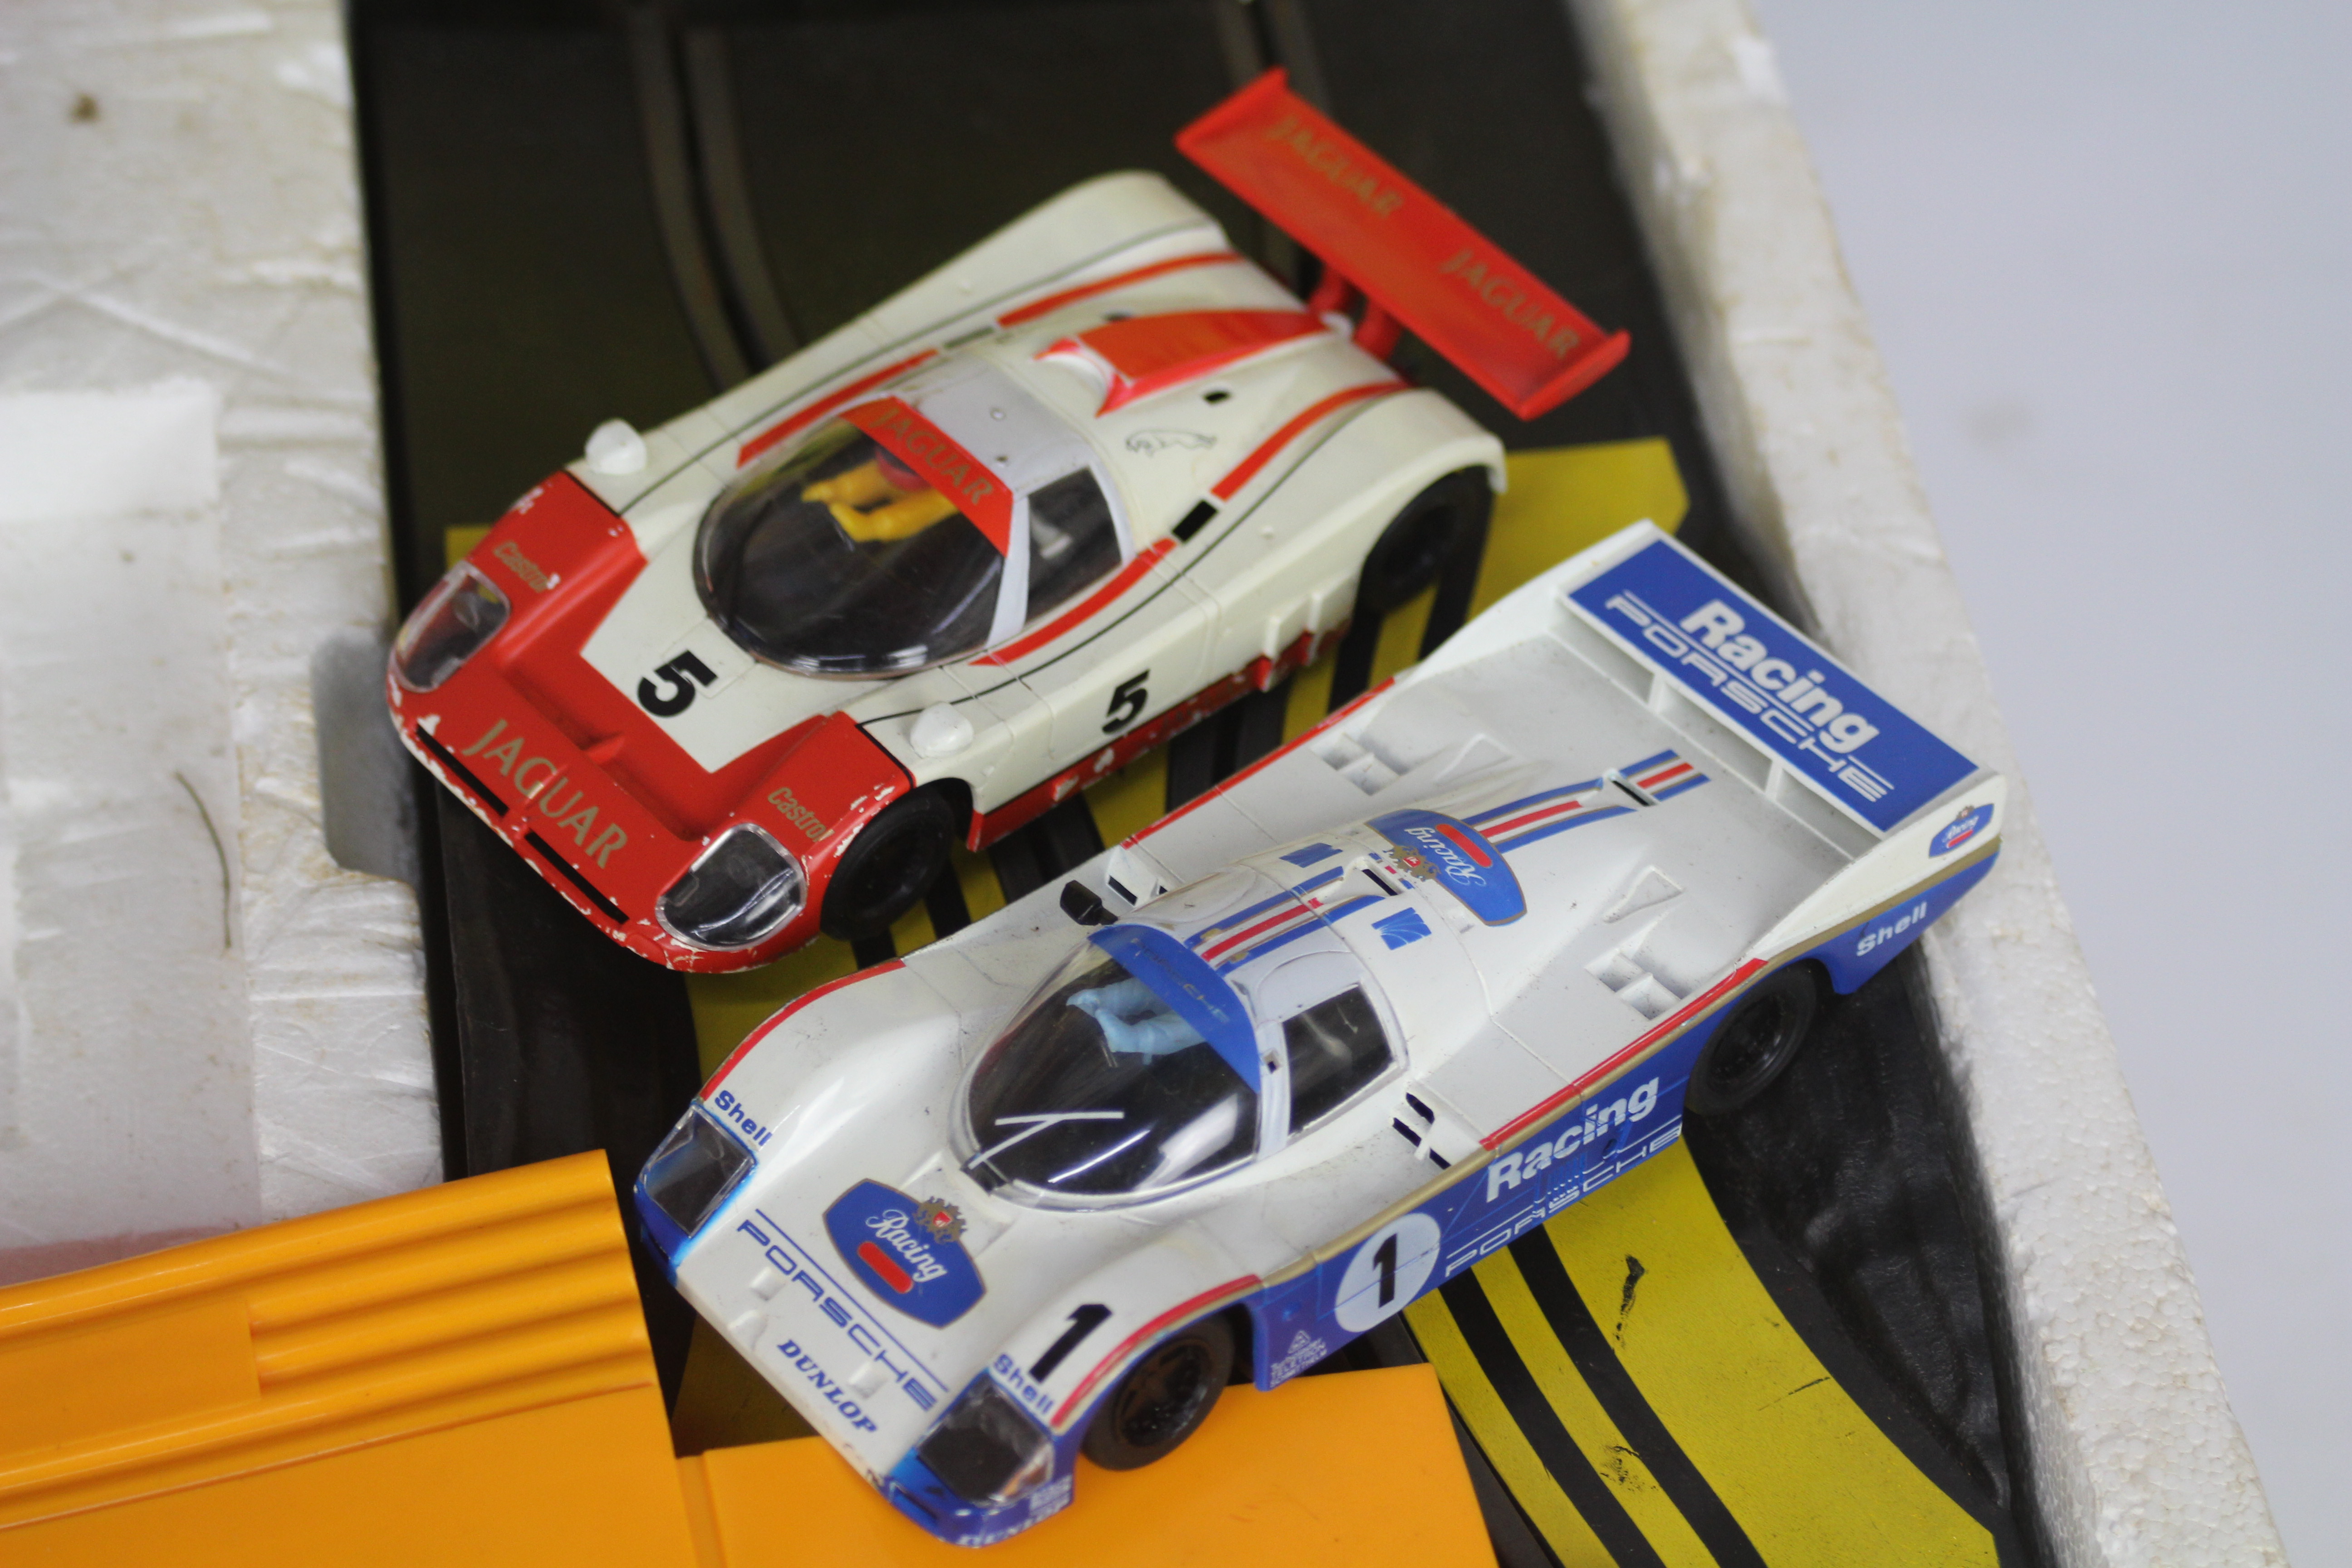 Scalextric - 2 x vintage boxed sets, # C742 Le Mans set with Porsche and Jaguar cars, - Image 4 of 6